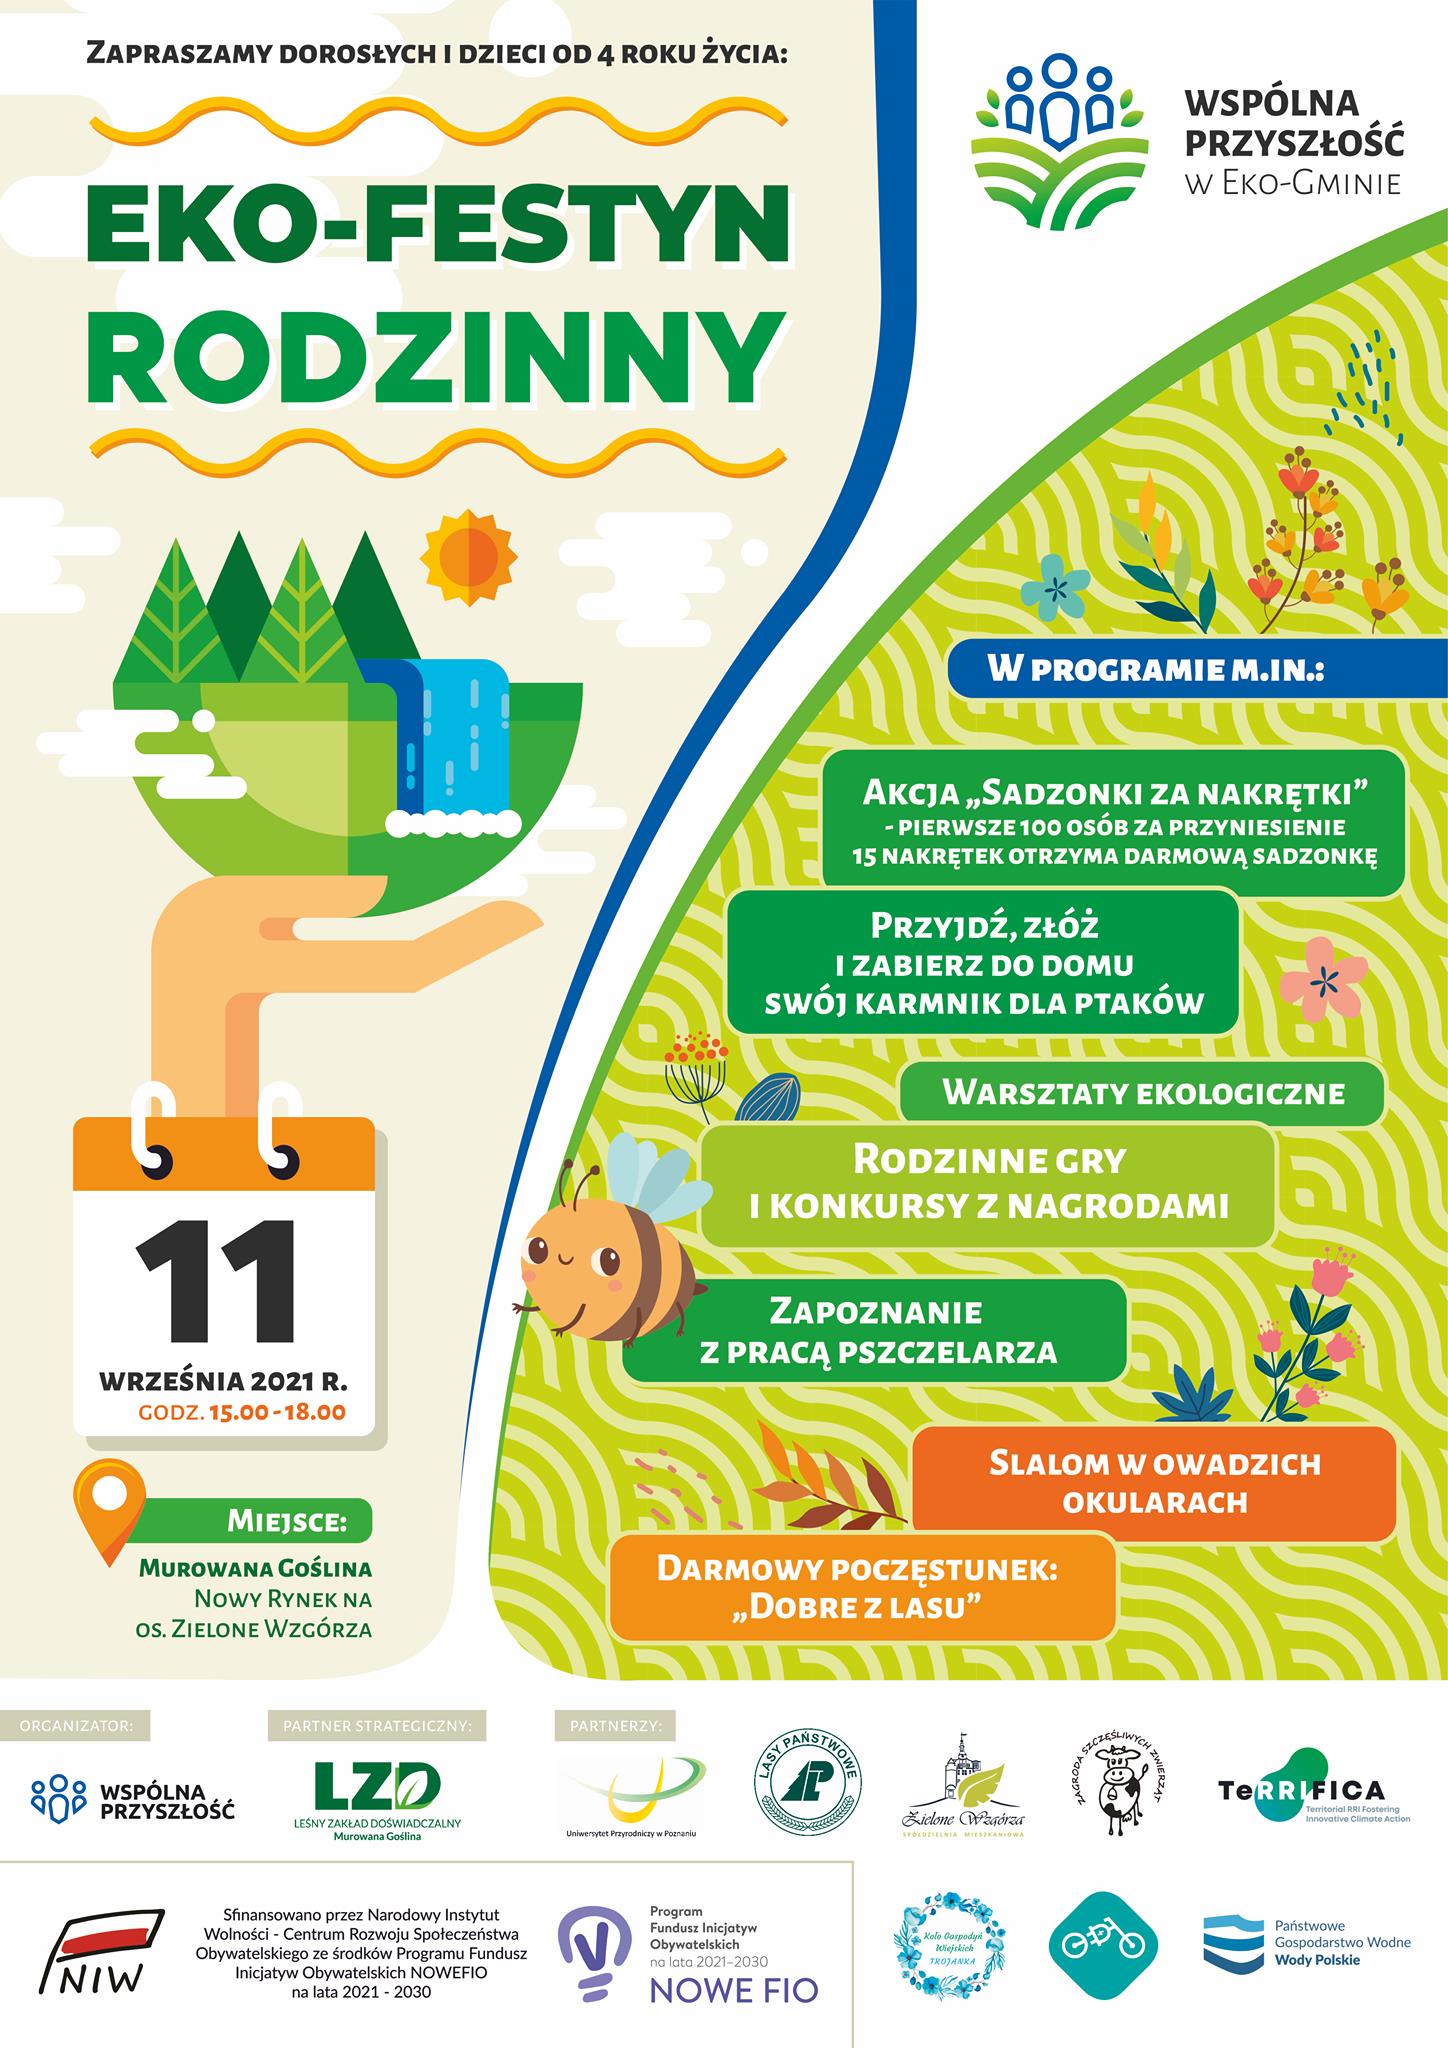 Plakat informujący o Eko Festynie Rodzinnym w Murowanej Goślinie w dniu 11.09.2021. Fot. LZD Murowana Goślina